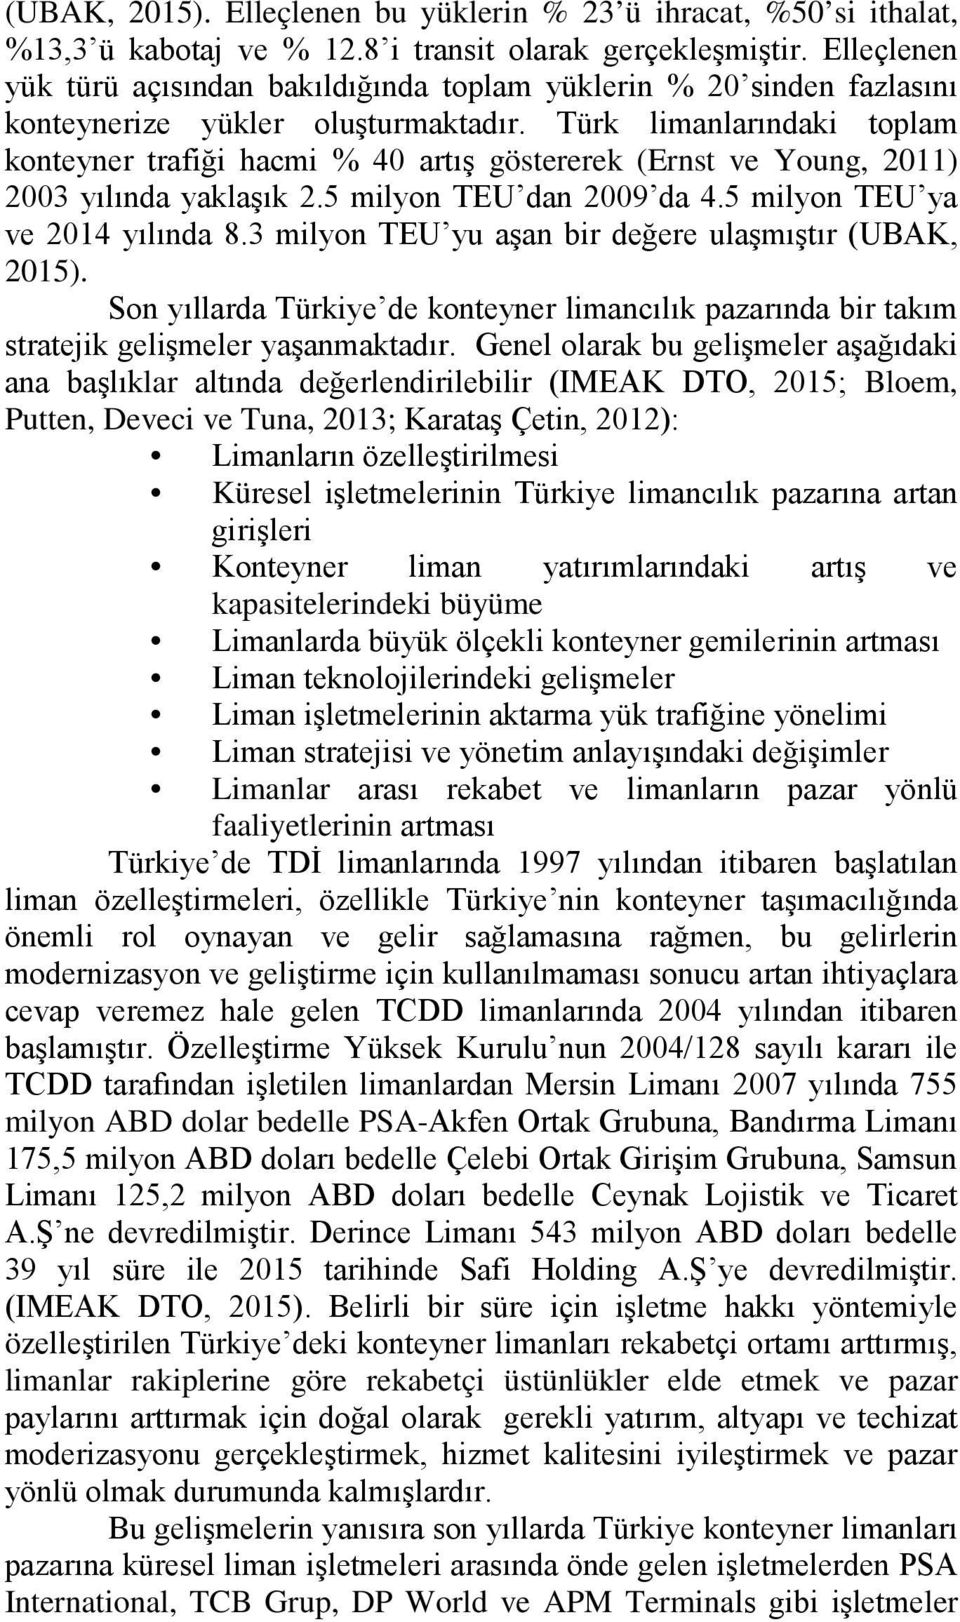 Türk limanlarındaki toplam konteyner trafiği hacmi % 40 artış göstererek (Ernst ve Young, 2011) 2003 yılında yaklaşık 2.5 milyon TEU dan 2009 da 4.5 milyon TEU ya ve 2014 yılında 8.